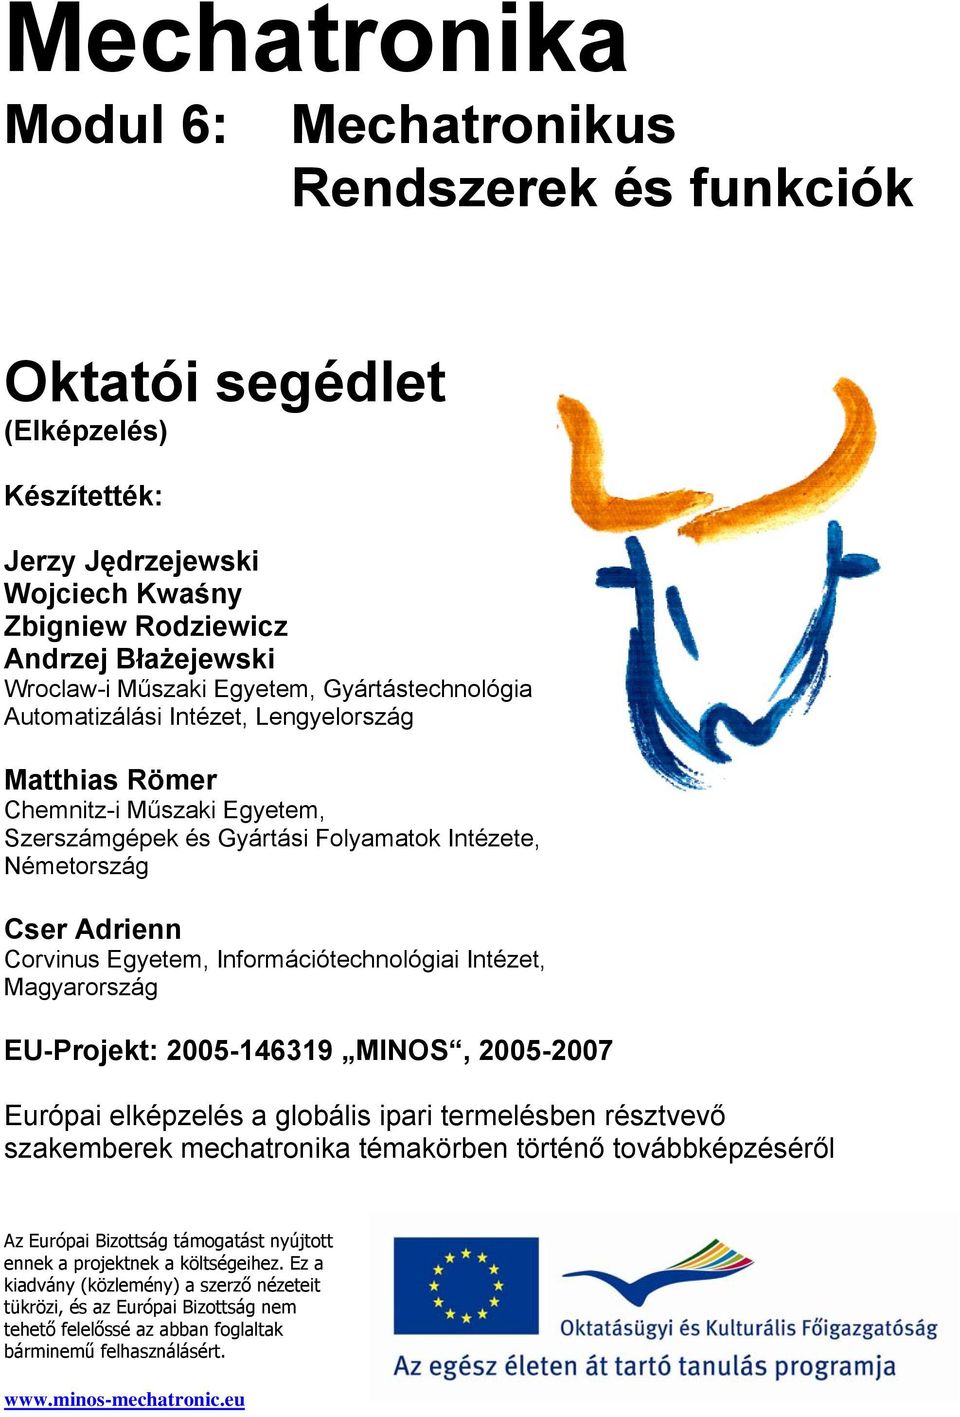 Egyetem, Információtechnológiai Intézet, Magyarország EU-Projekt: 2005-146319 MINOS, 2005-2007 Európai elképzelés a globális ipari termelésben résztvevő szakemberek mechatronika témakörben történő